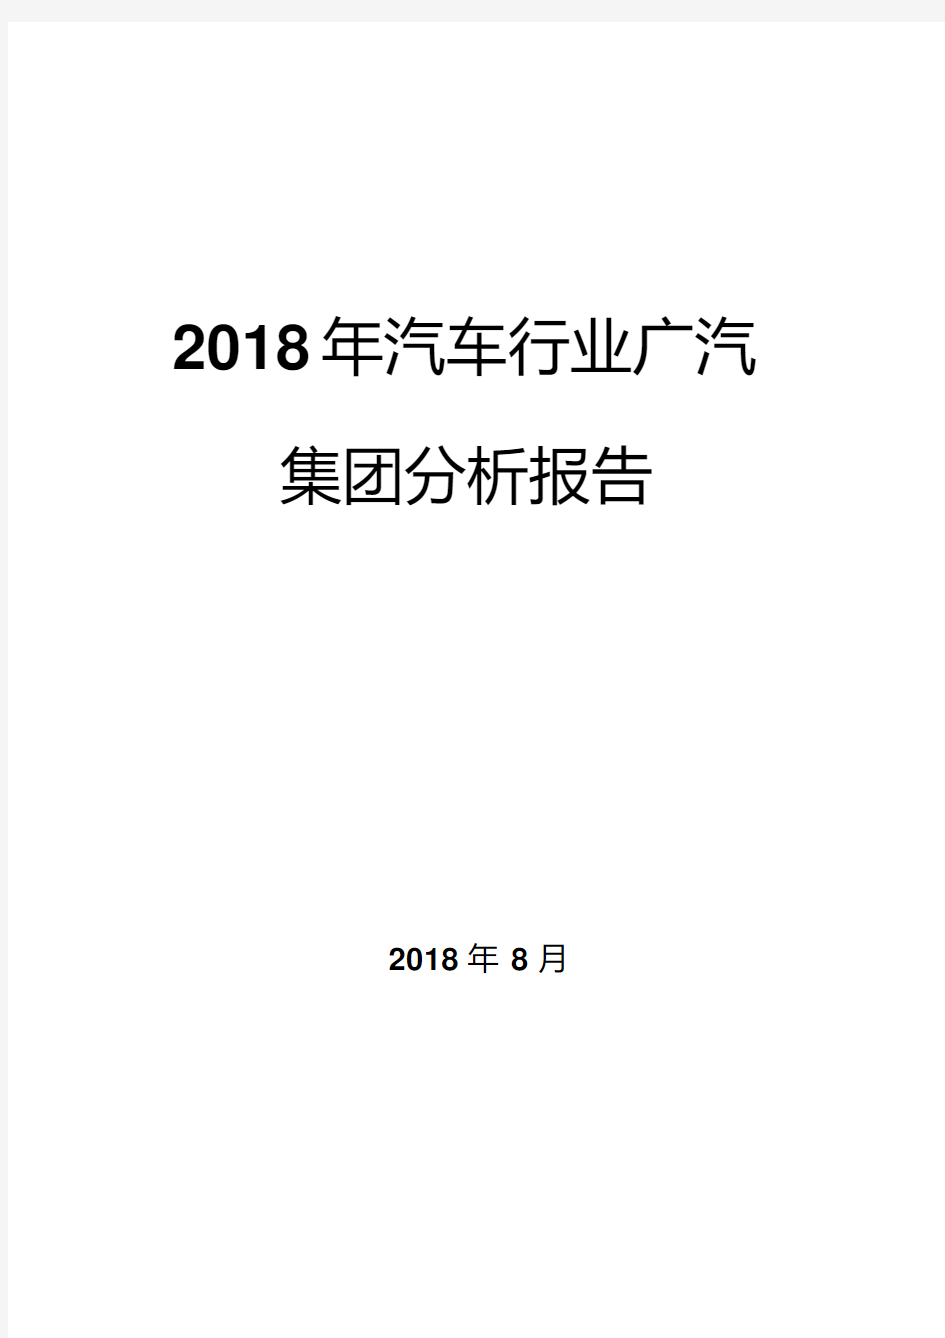 2018年汽车行业广汽集团分析报告